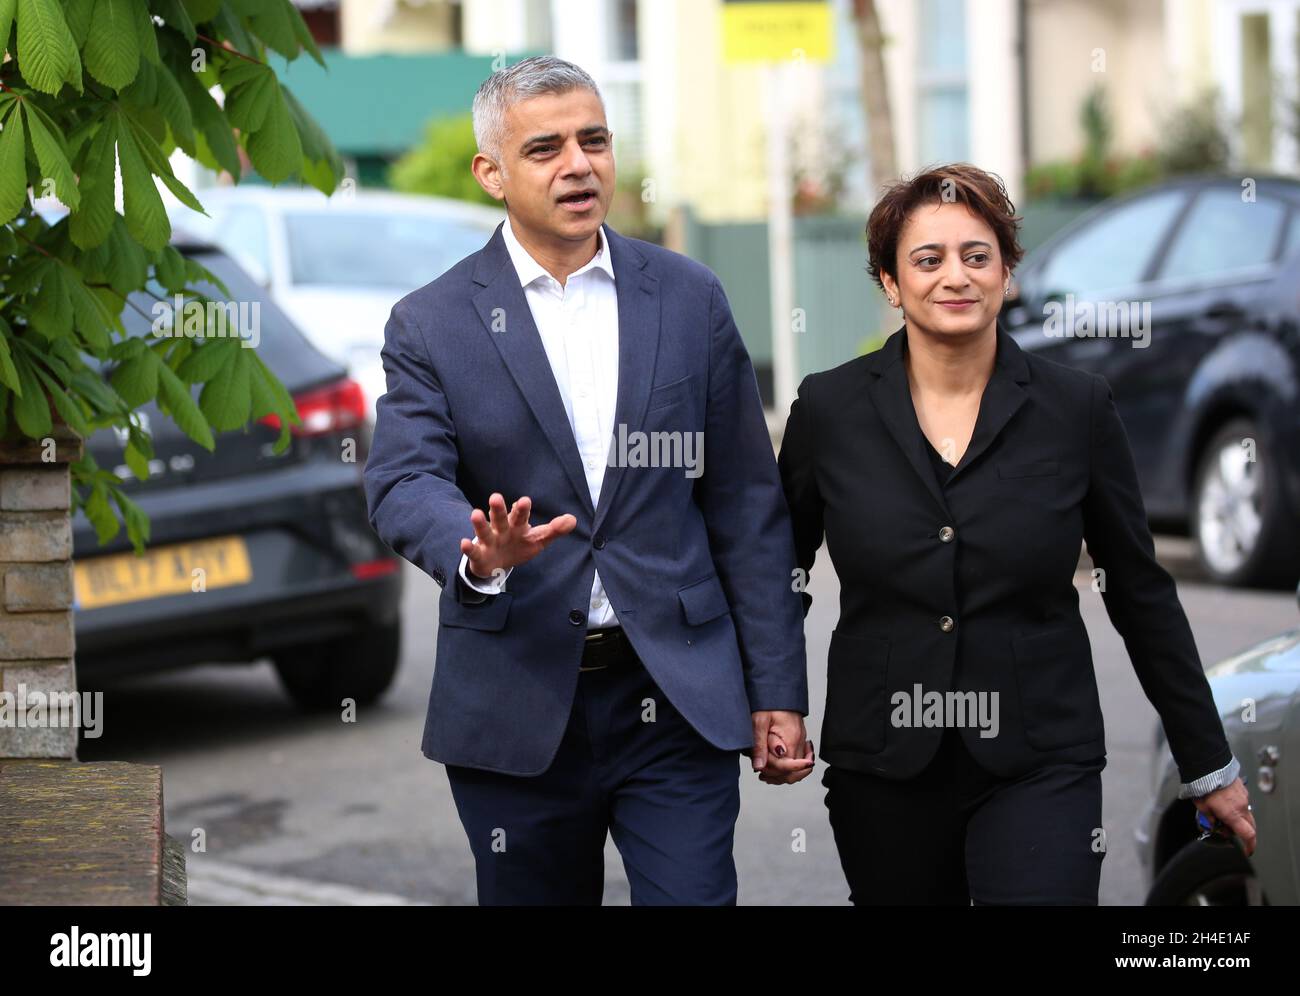 El Alcalde de Londres Sadiq Khan llega con su esposa Saadiya Khan para emitir su voto en la Iglesia de St Albans, Wandsworth, al sur de Londres, durante las elecciones del consejo local Foto de stock